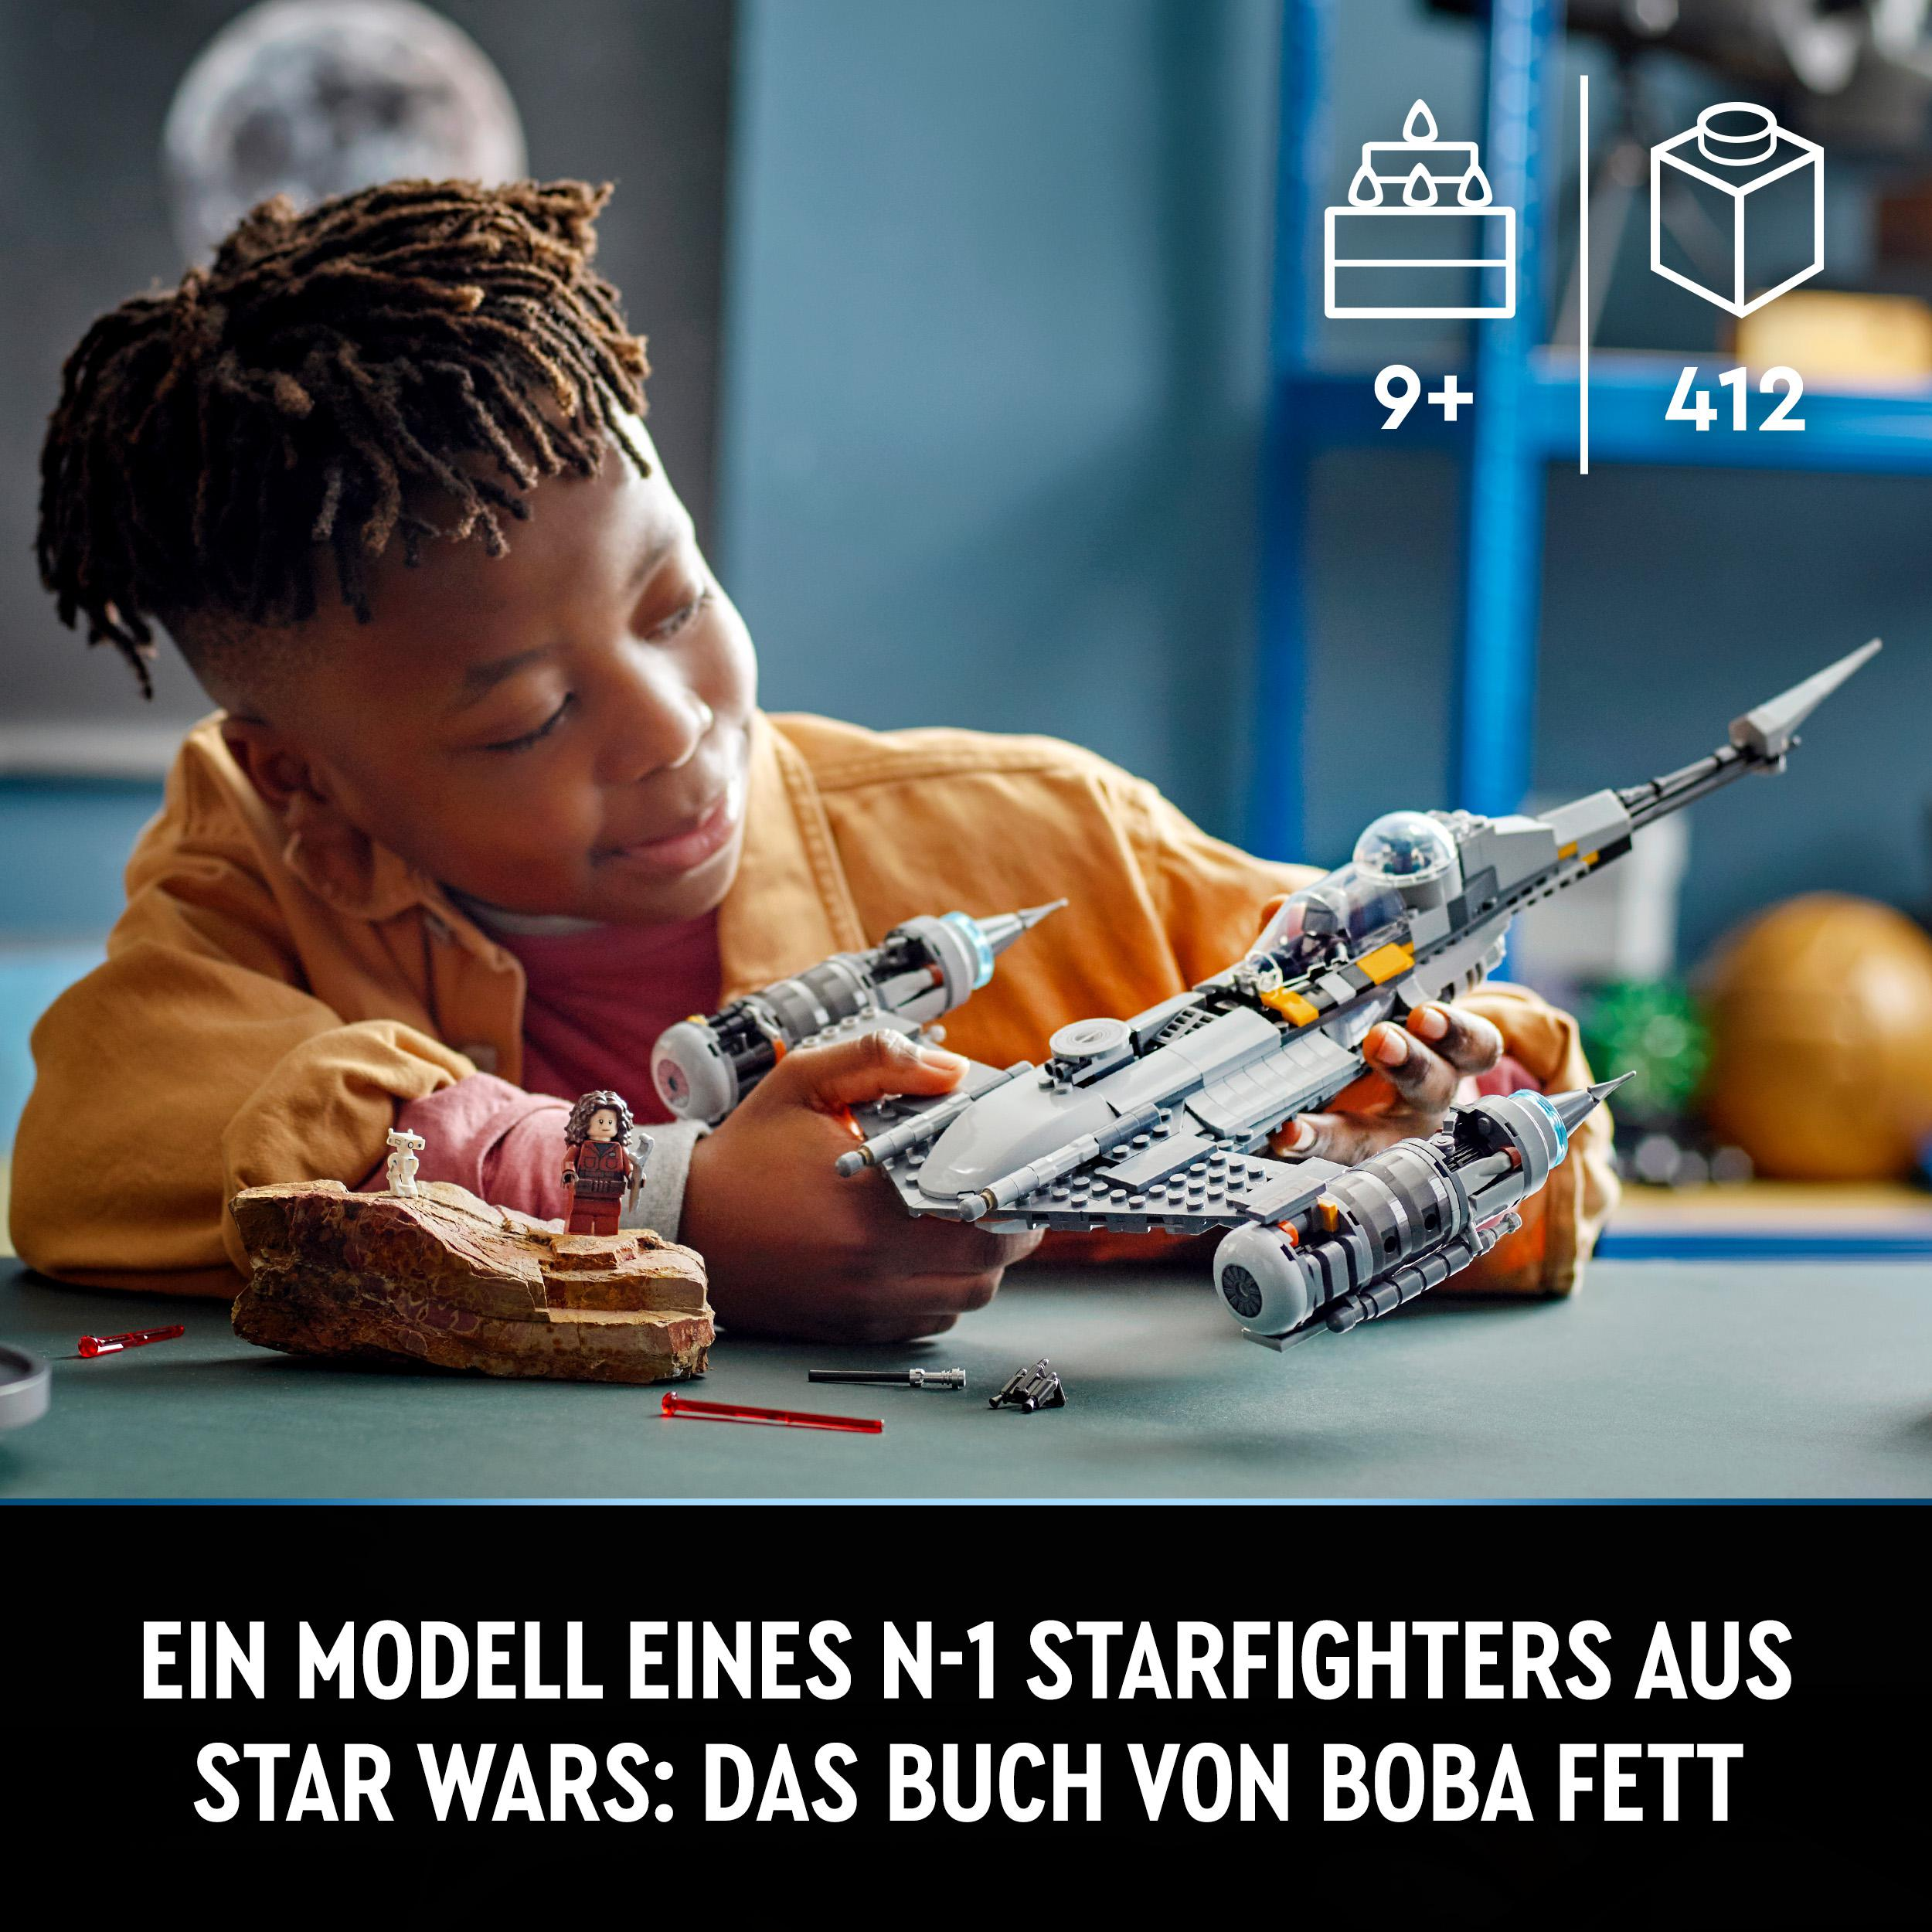 LEGO Star Mandalorianers Bausatz, Mehrfarbig 75325 N-1 Starfighter des Der Wars